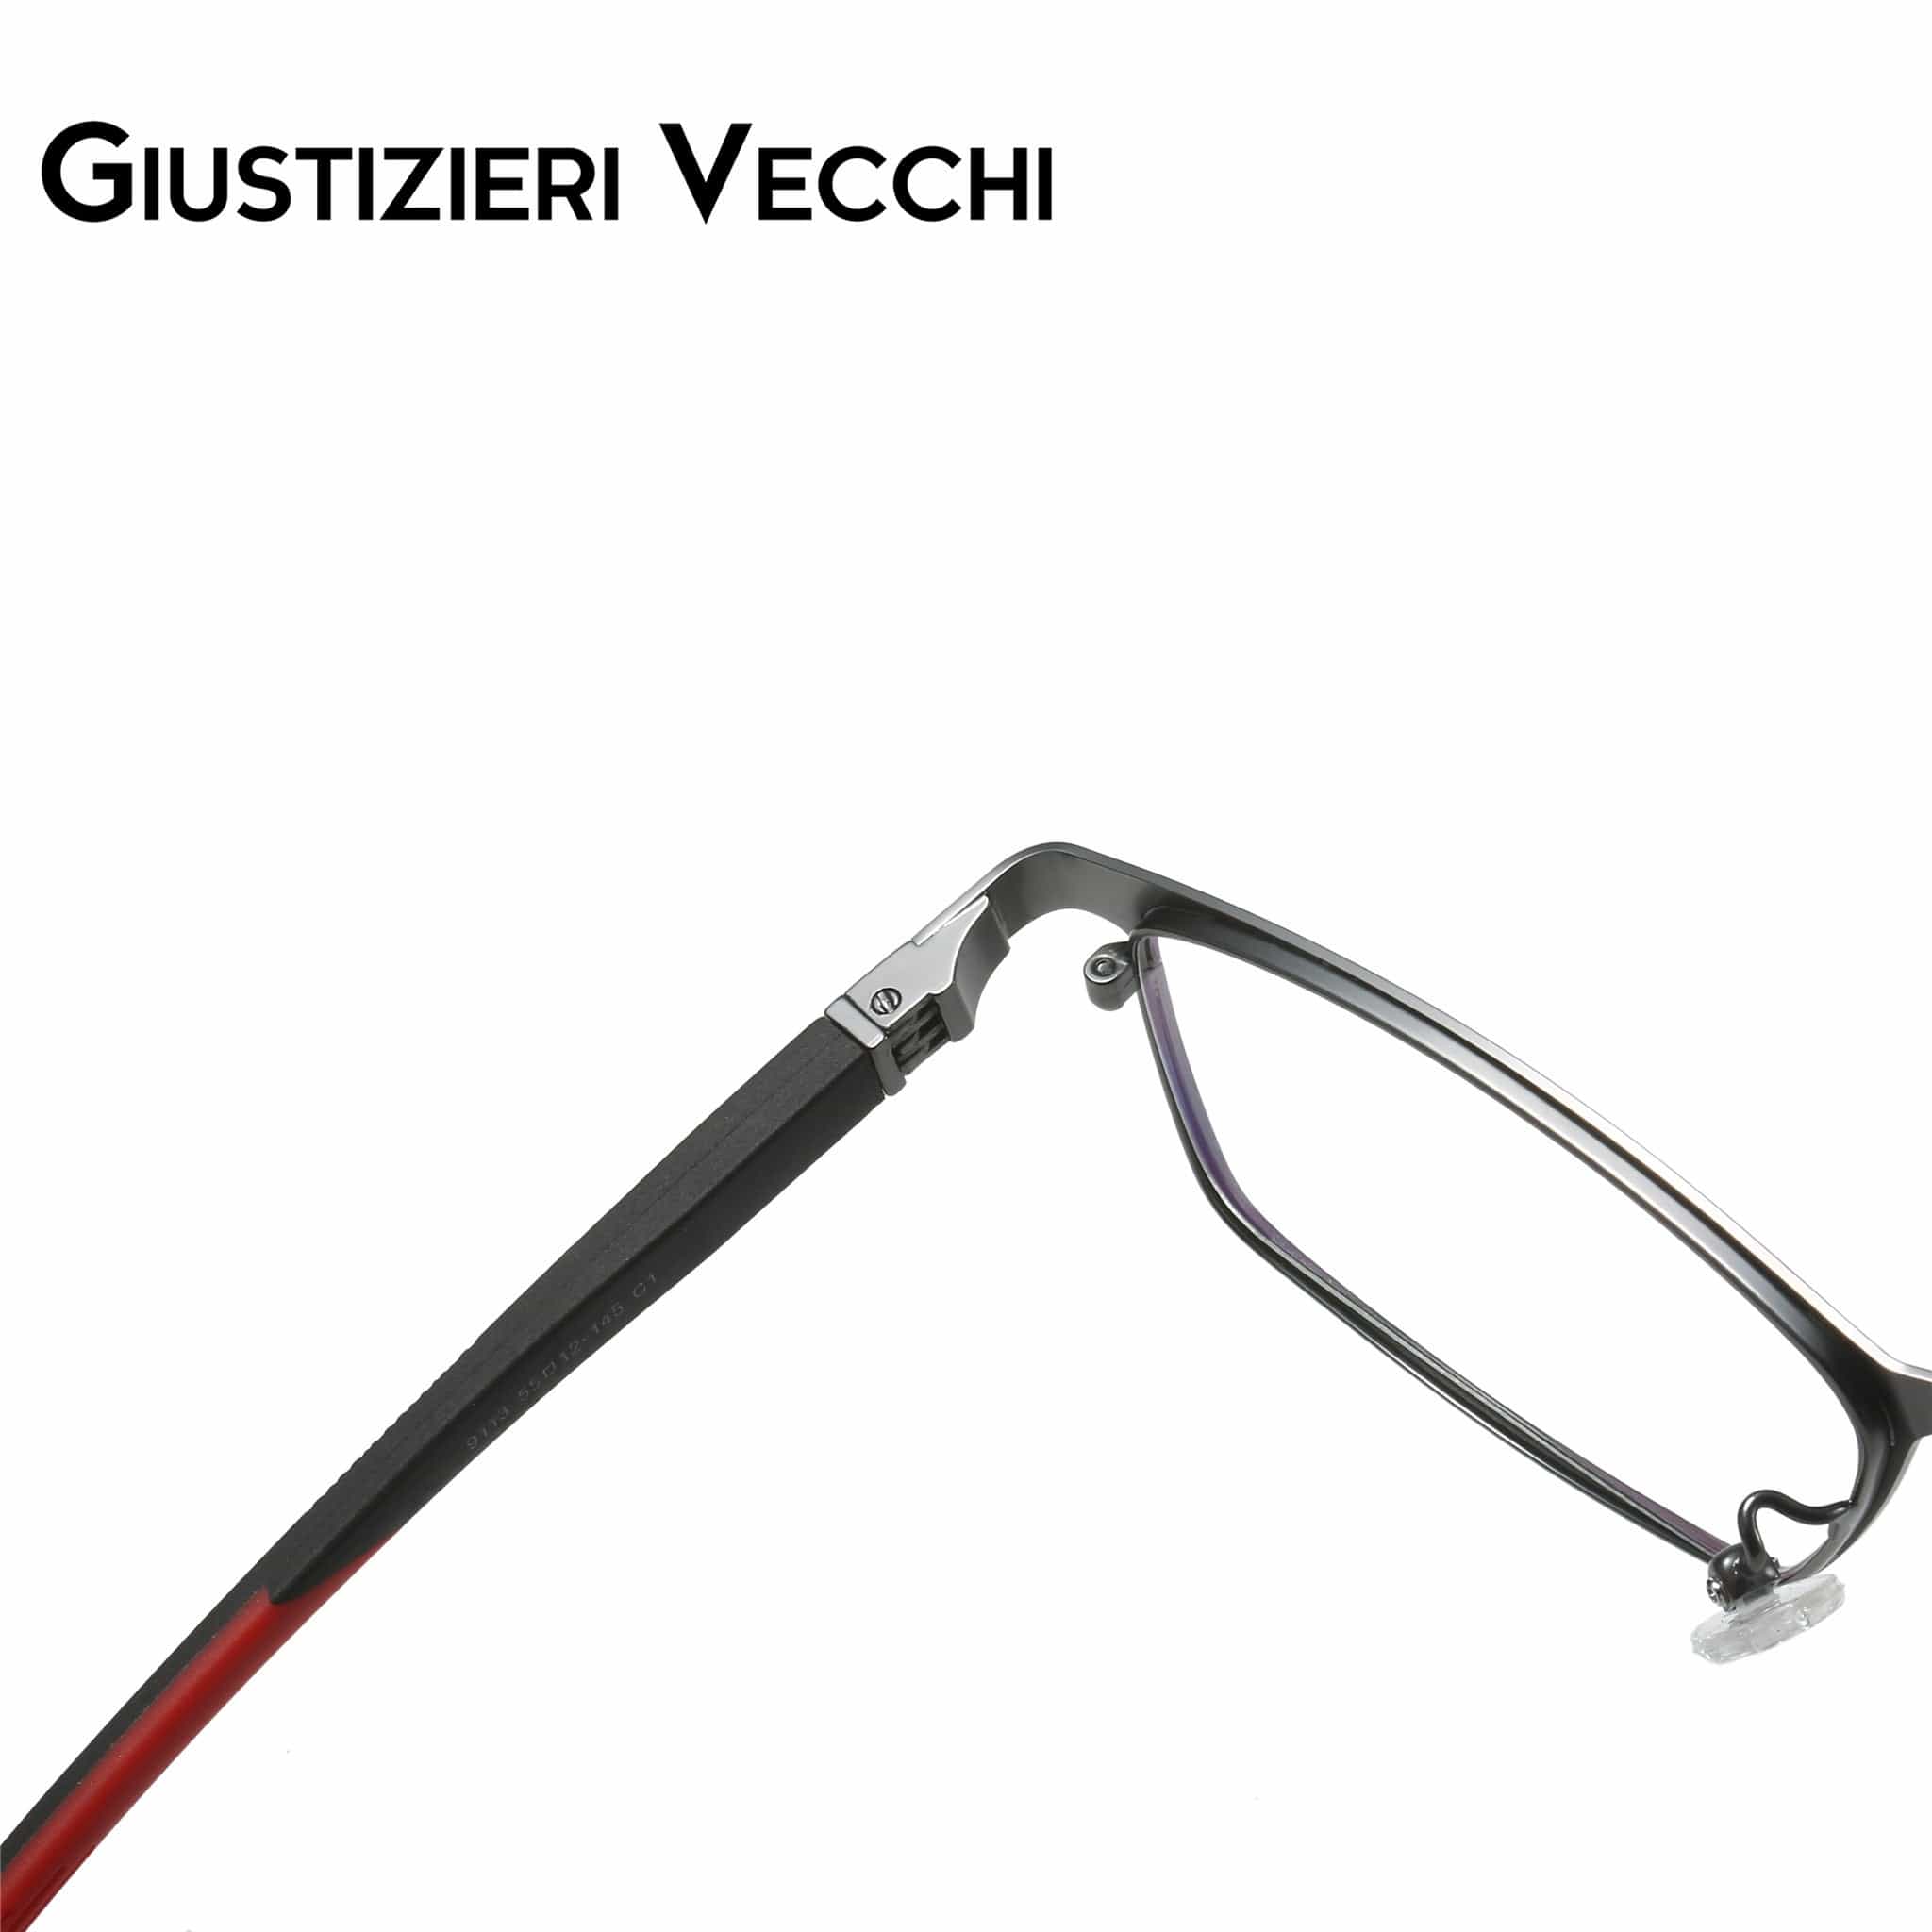 GIUSTIZIERI VECCHI Eyeglasses IceStorm Uno